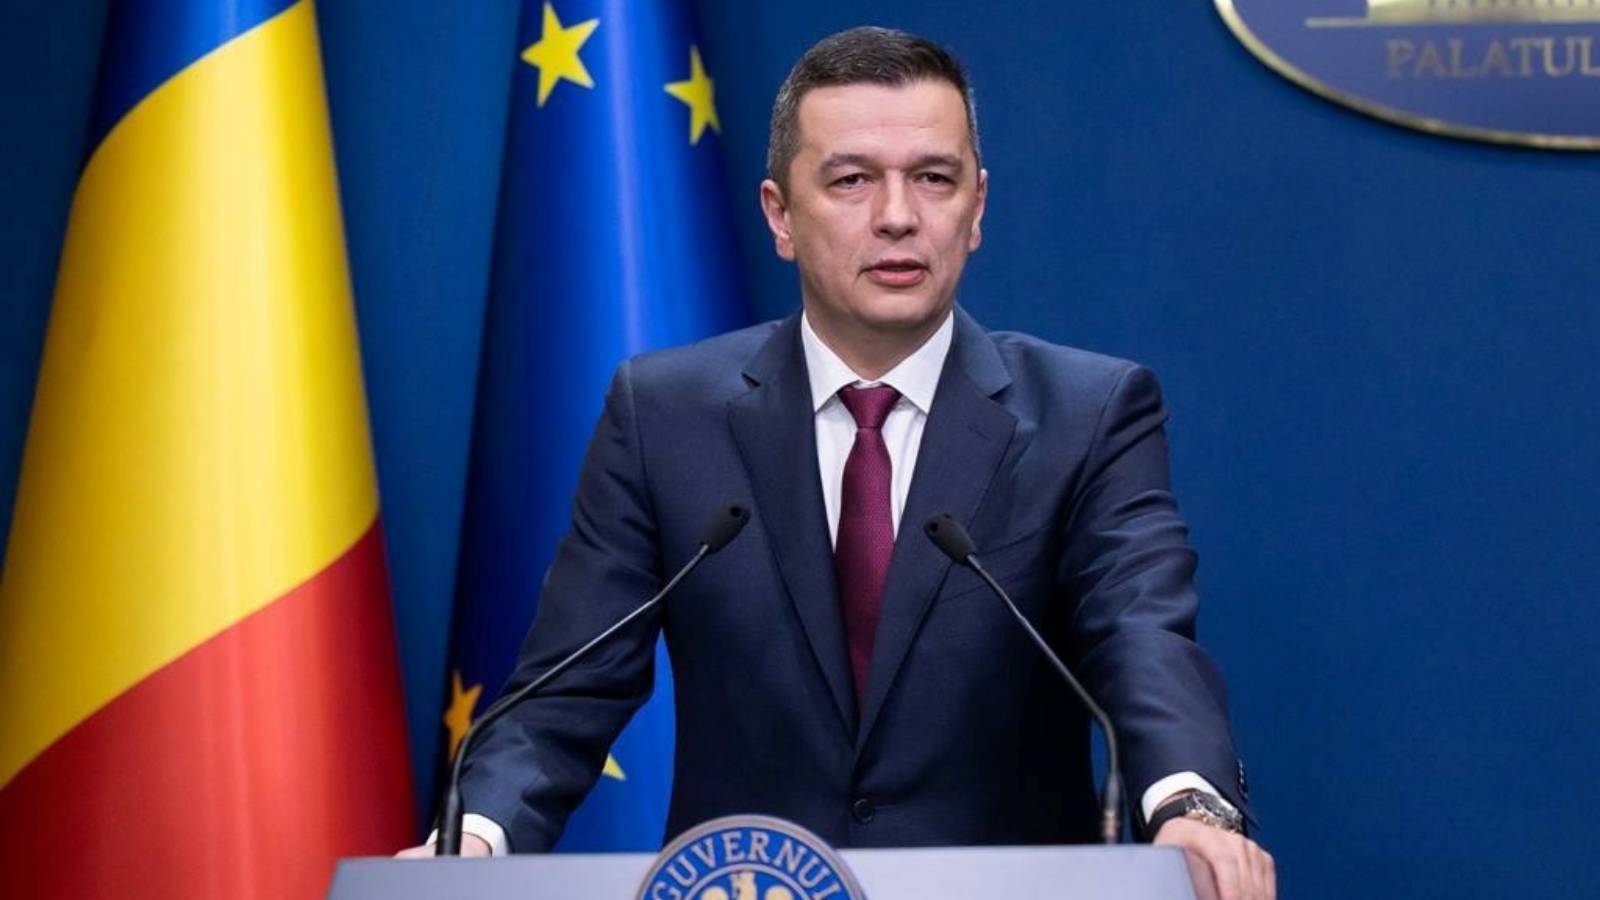 Le decisioni dell'ultimo minuto del Ministro dei Trasporti hanno un impatto su tutti i rumeni